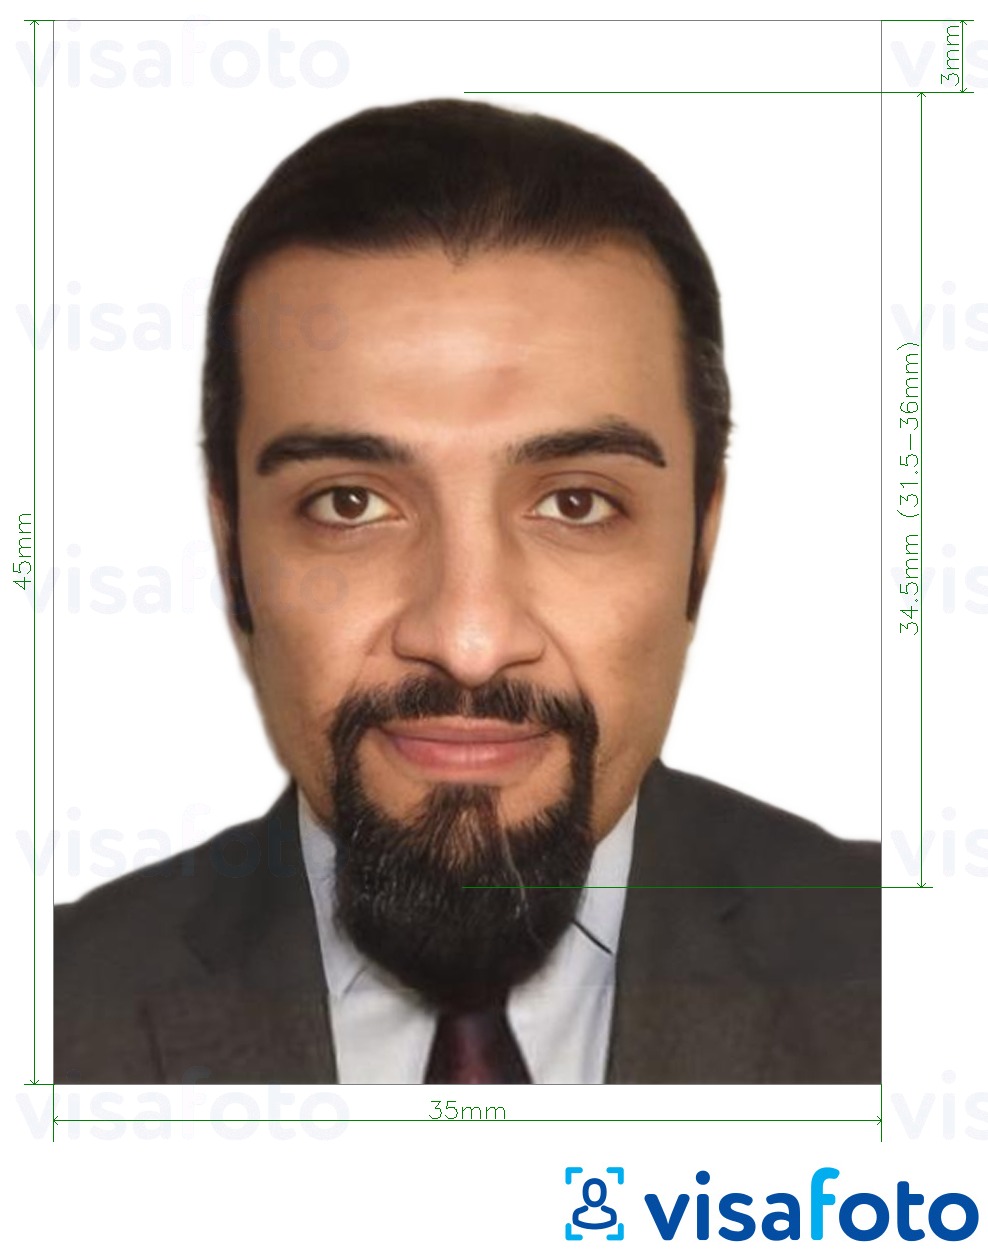 Voorbeeld van foto voor Irak paspoort 35x45 mm (3.5x4.5 cm) met exacte maatspecificatie